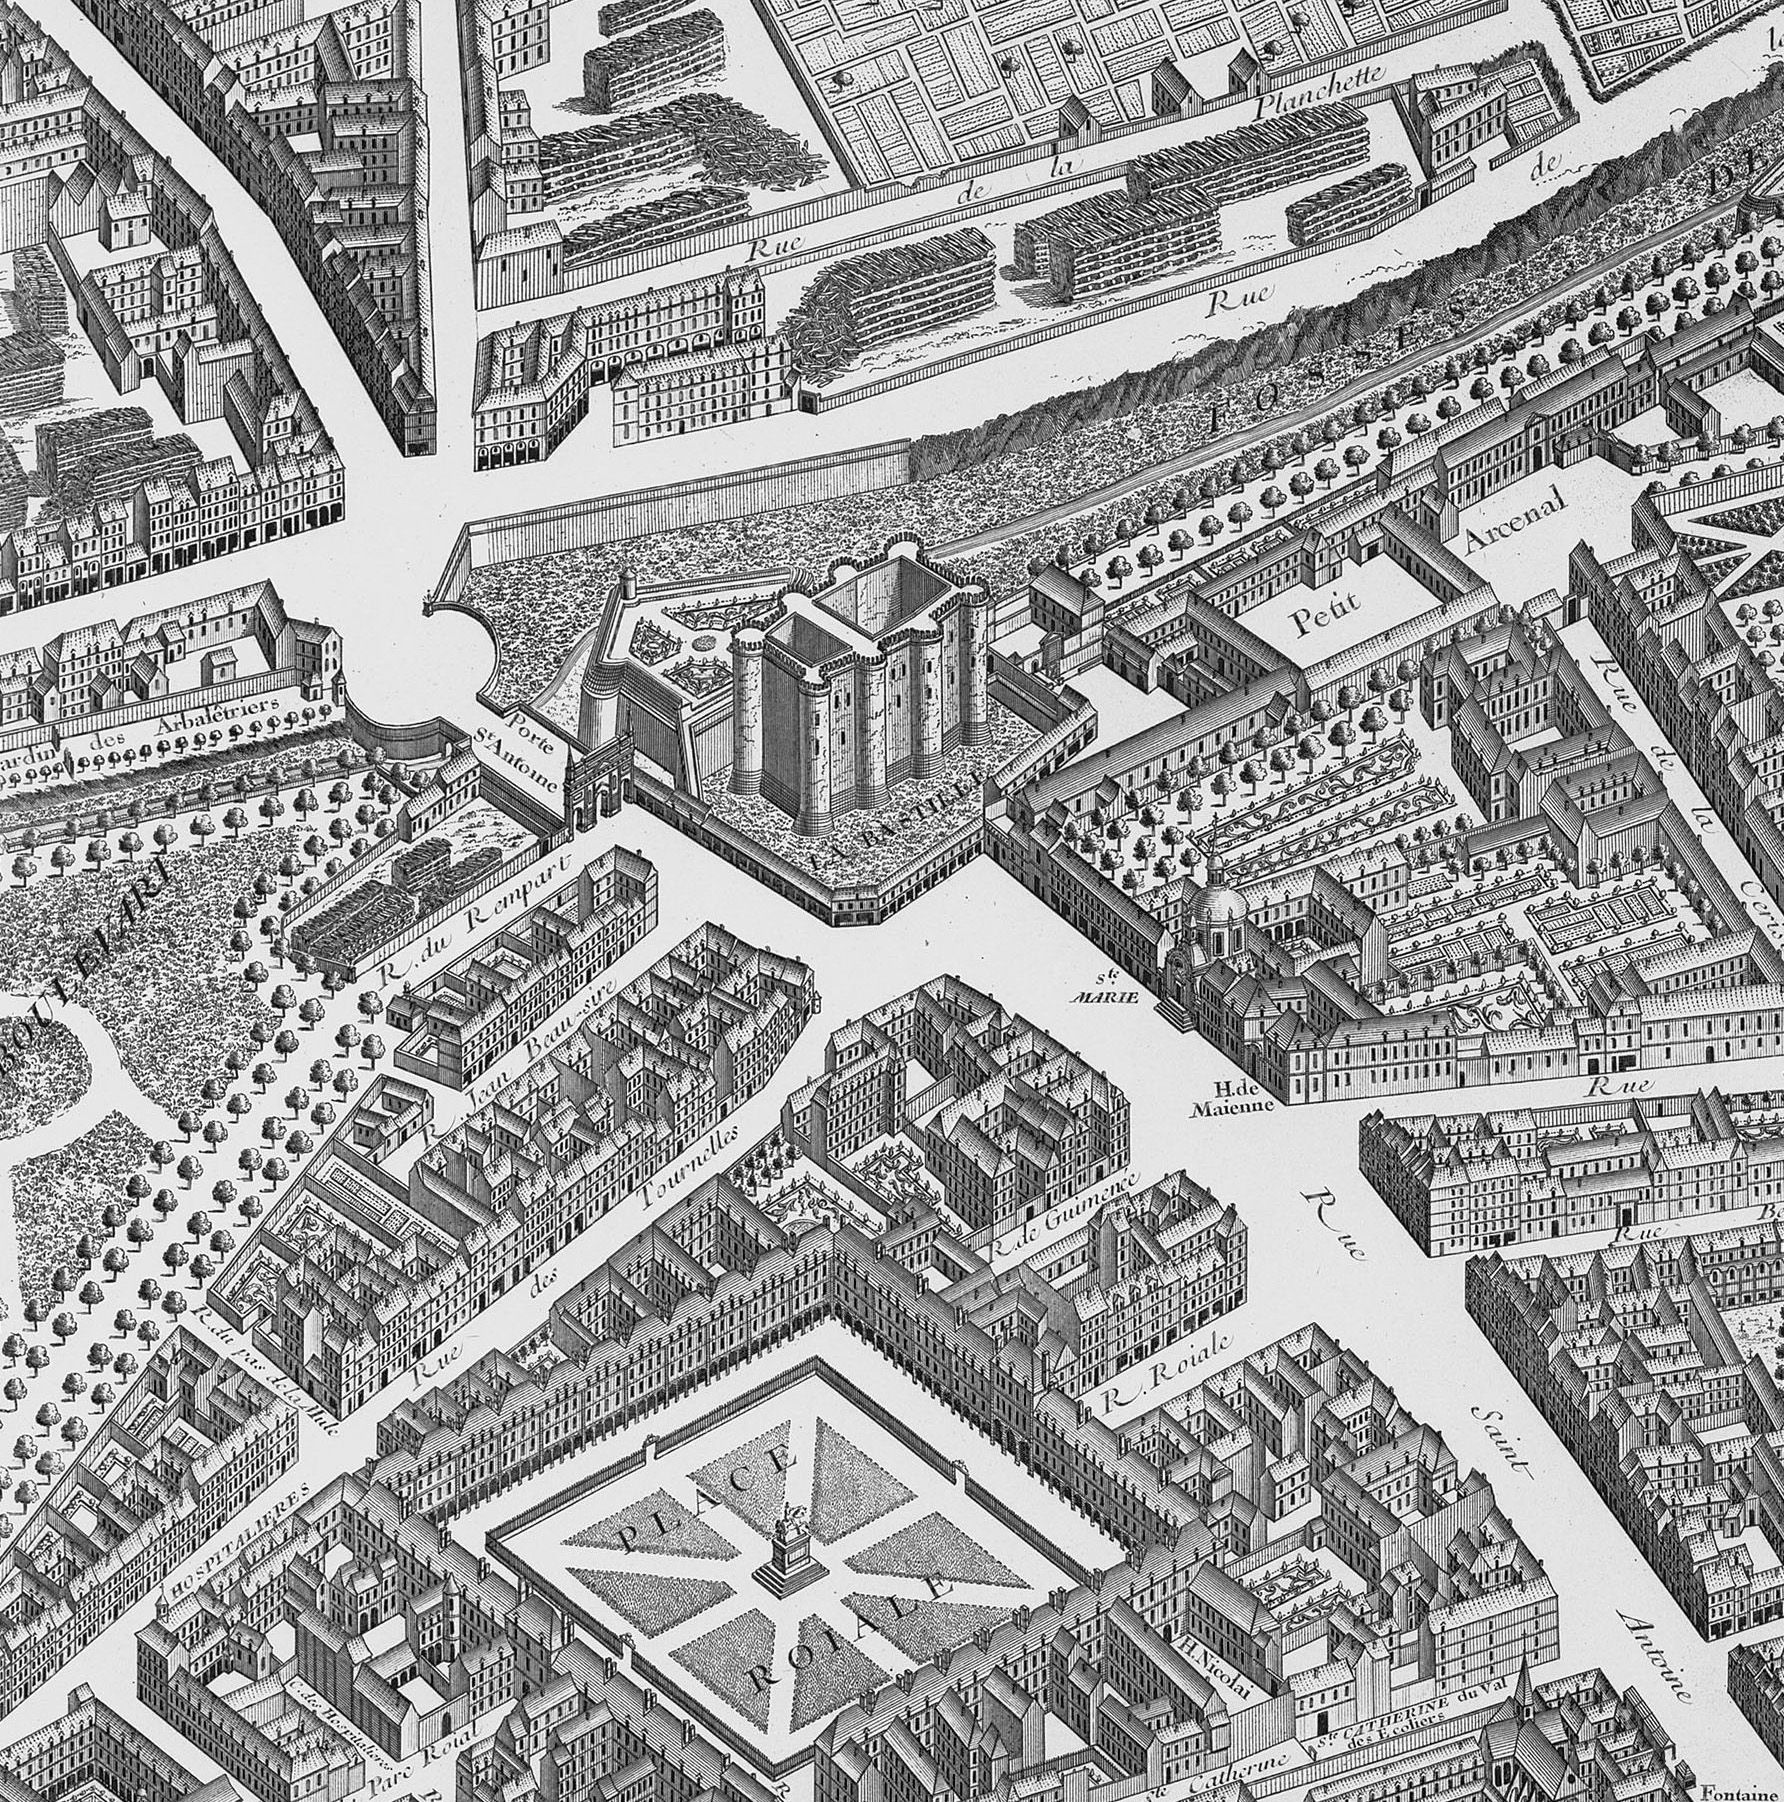 Ворота Сент-Антуан. Рядом видны башни Бастилии. Изображение на плане Парижа авторства Тюрго, 1739 год